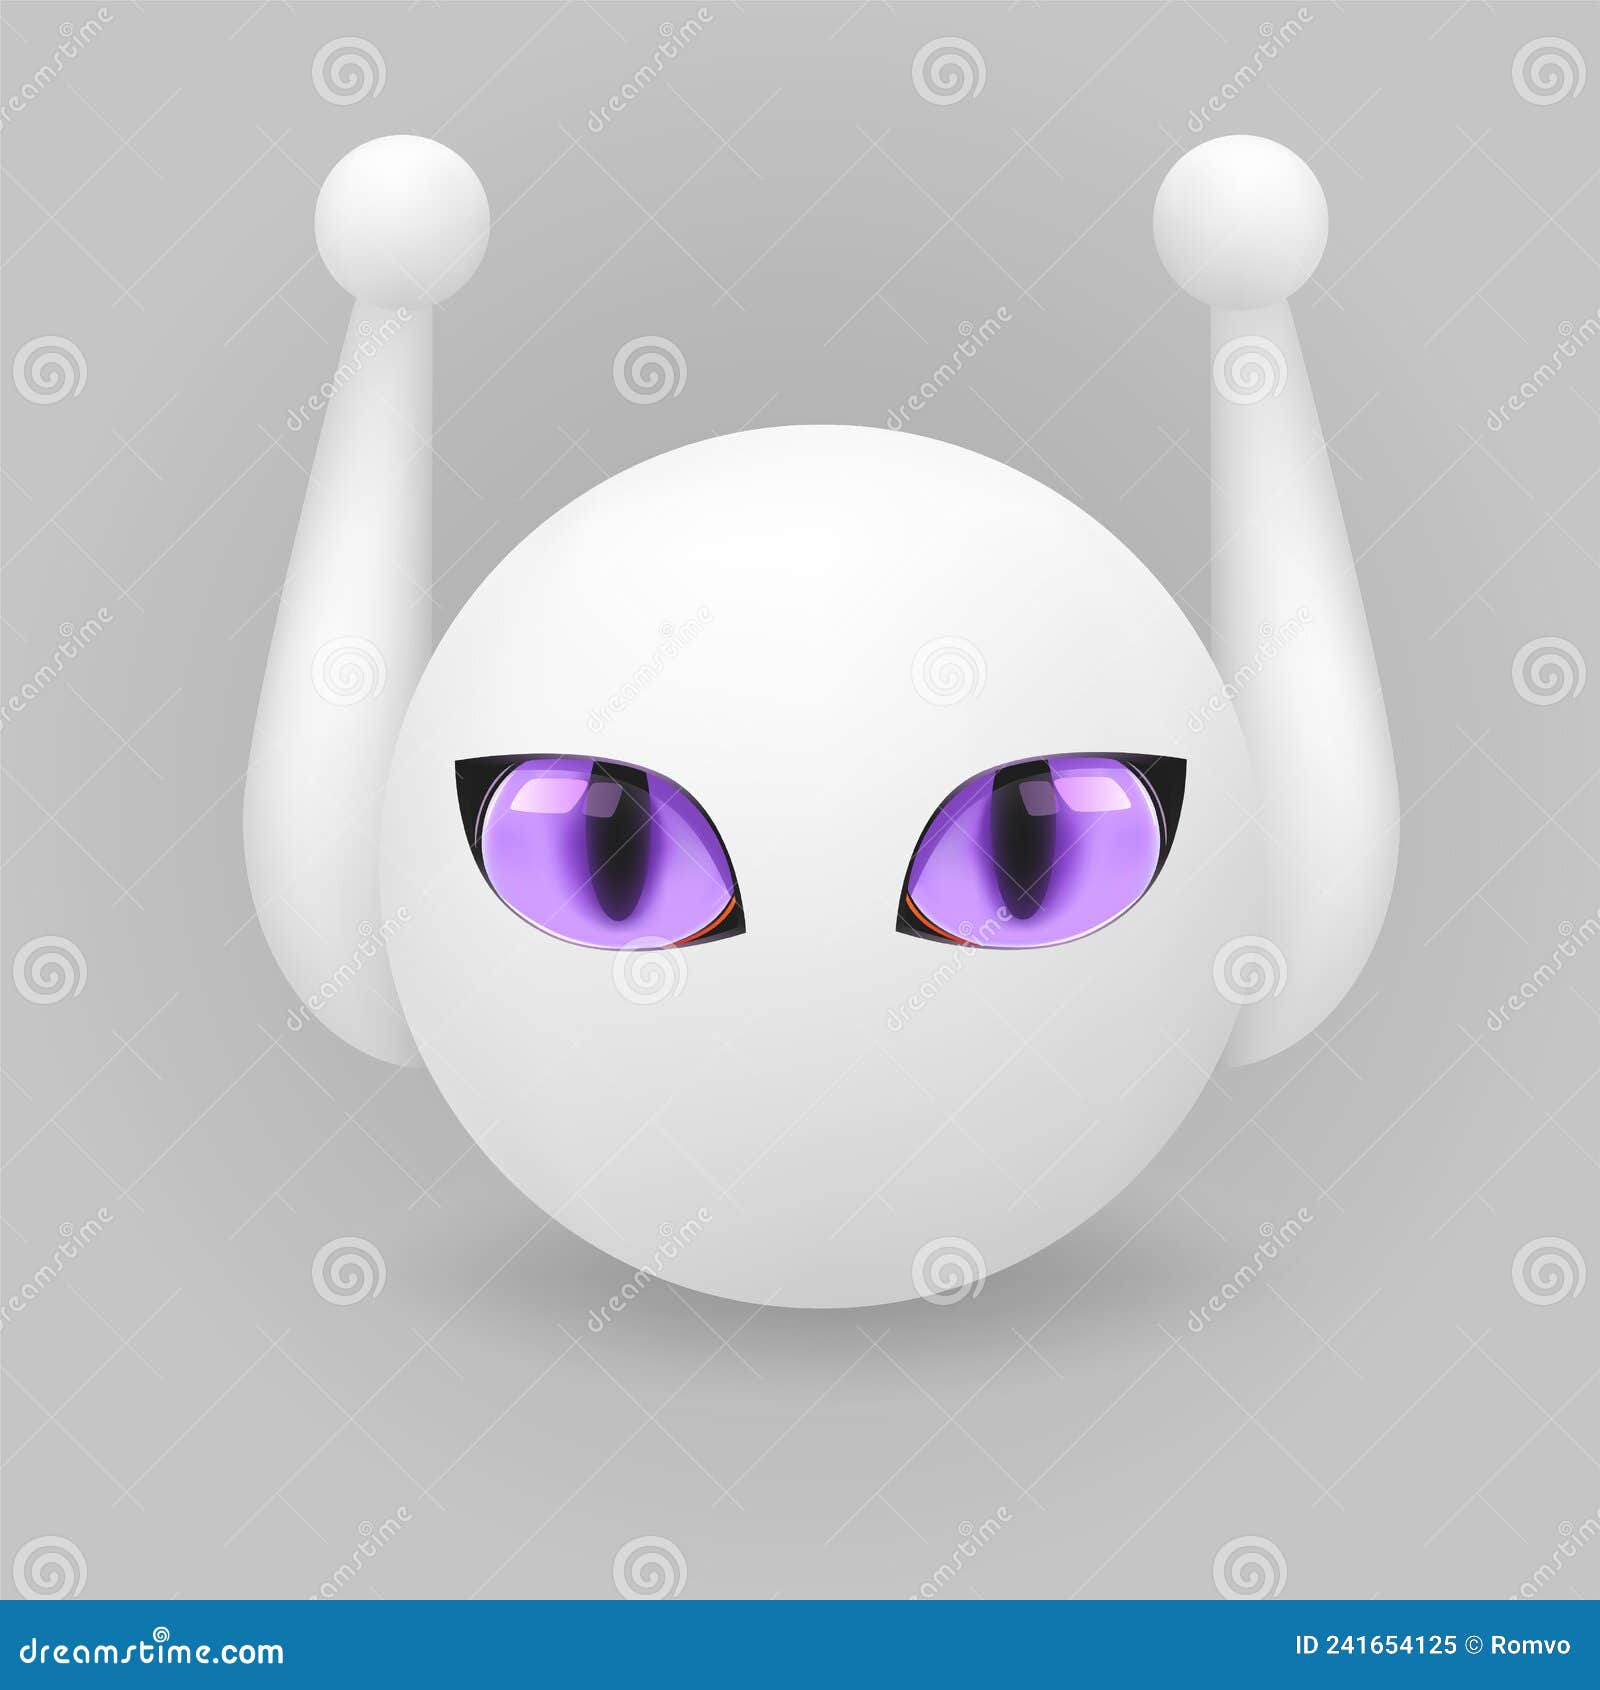 2800 Bot Avatar Illustrations RoyaltyFree Vector Graphics  Clip Art   iStock  Robot